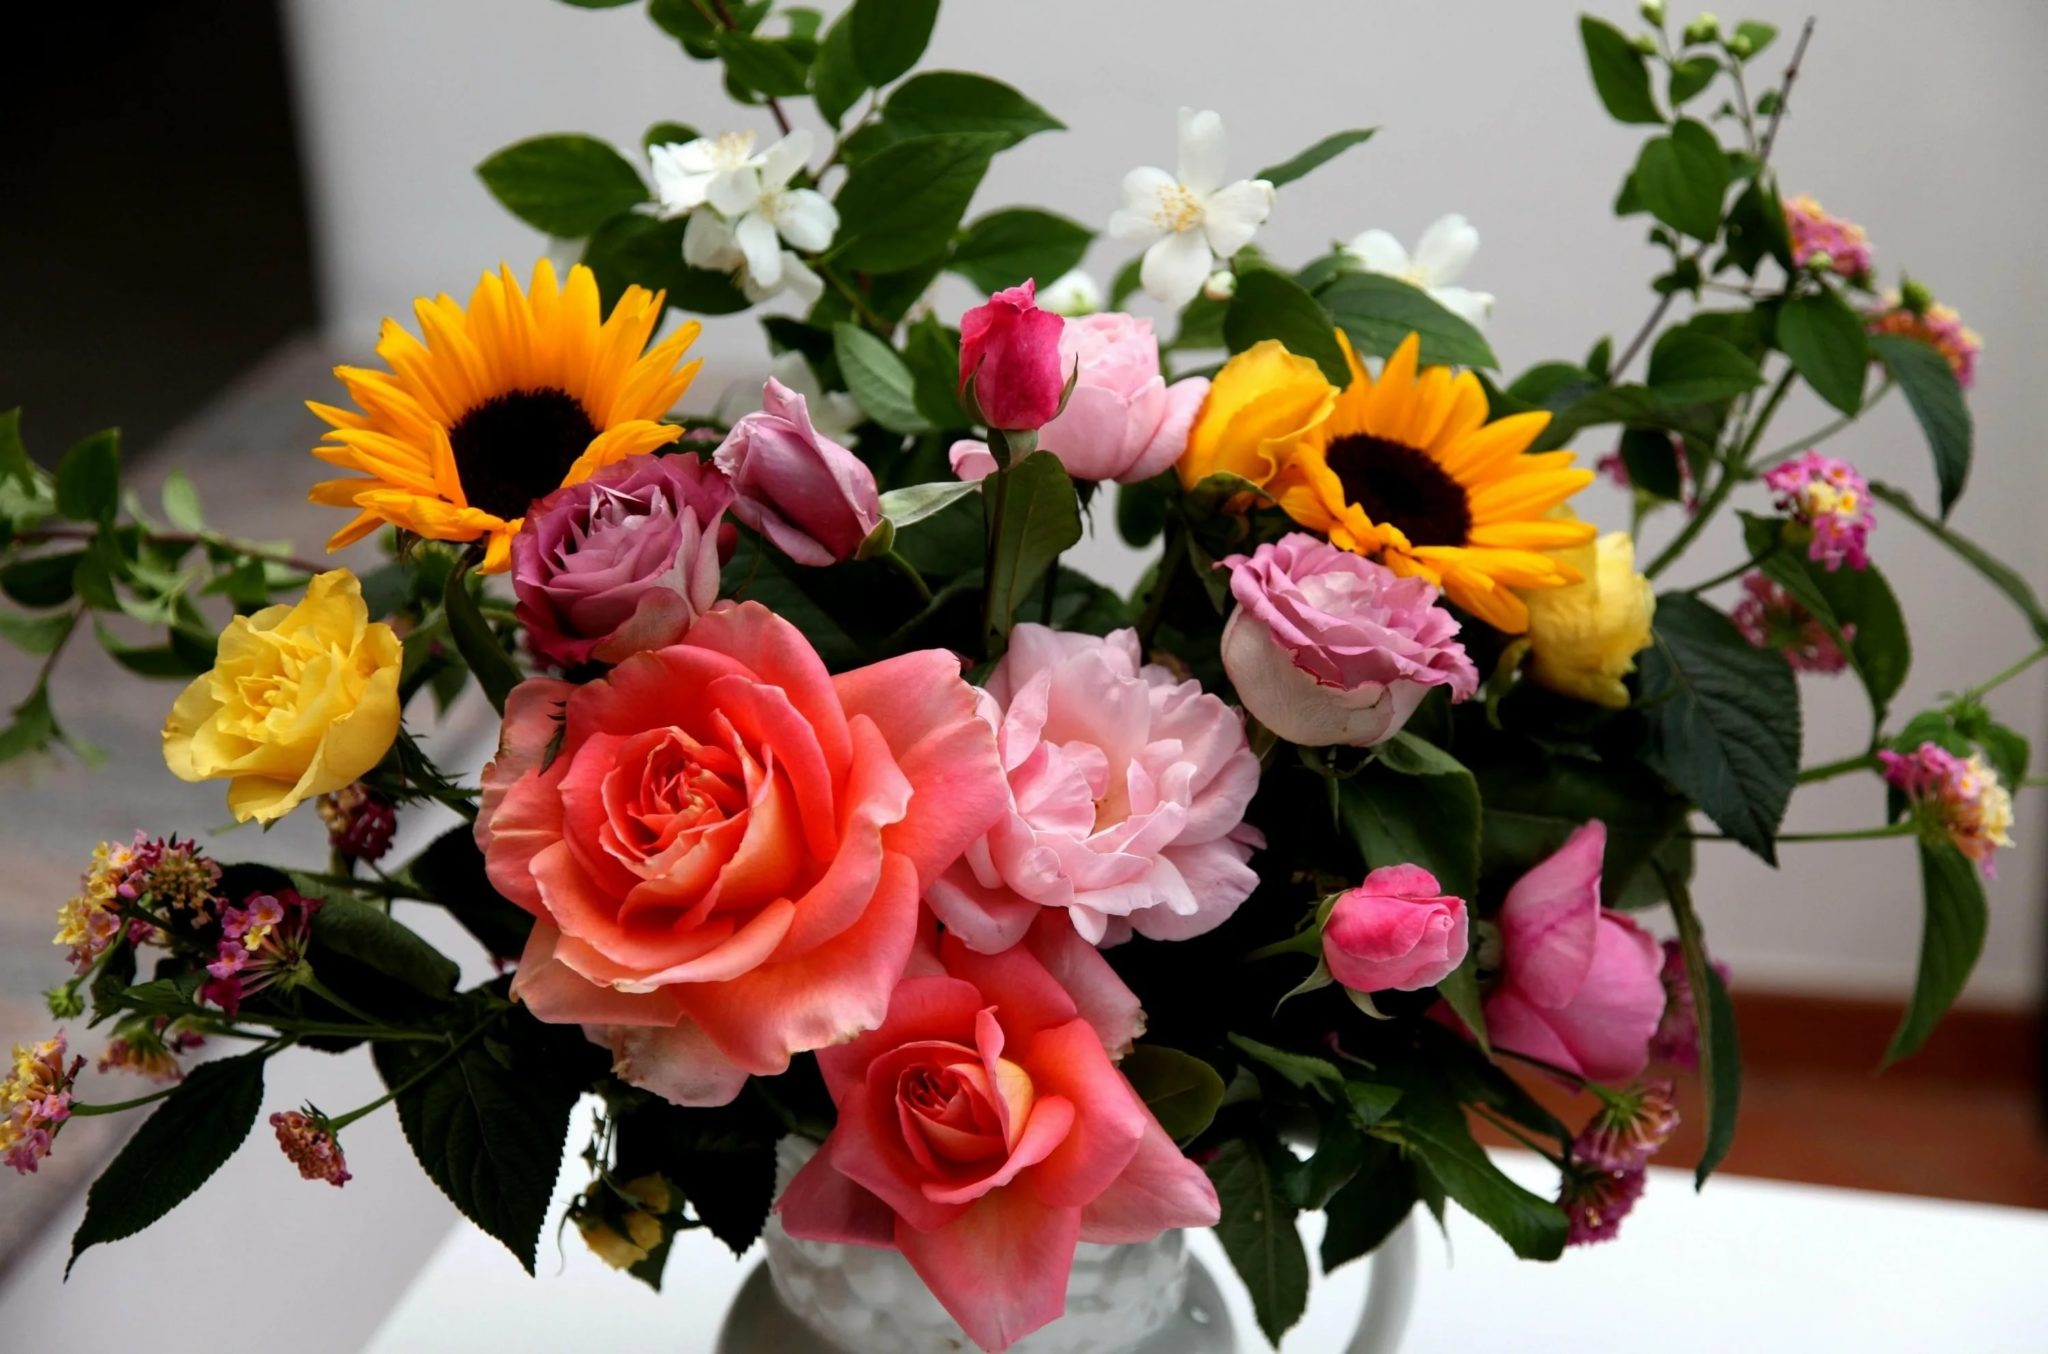 Картинка с цветами на столе. Красивый букет цветов. Красивый букет разных цветов. Шикарные цветы. Шикарный букет цветов.